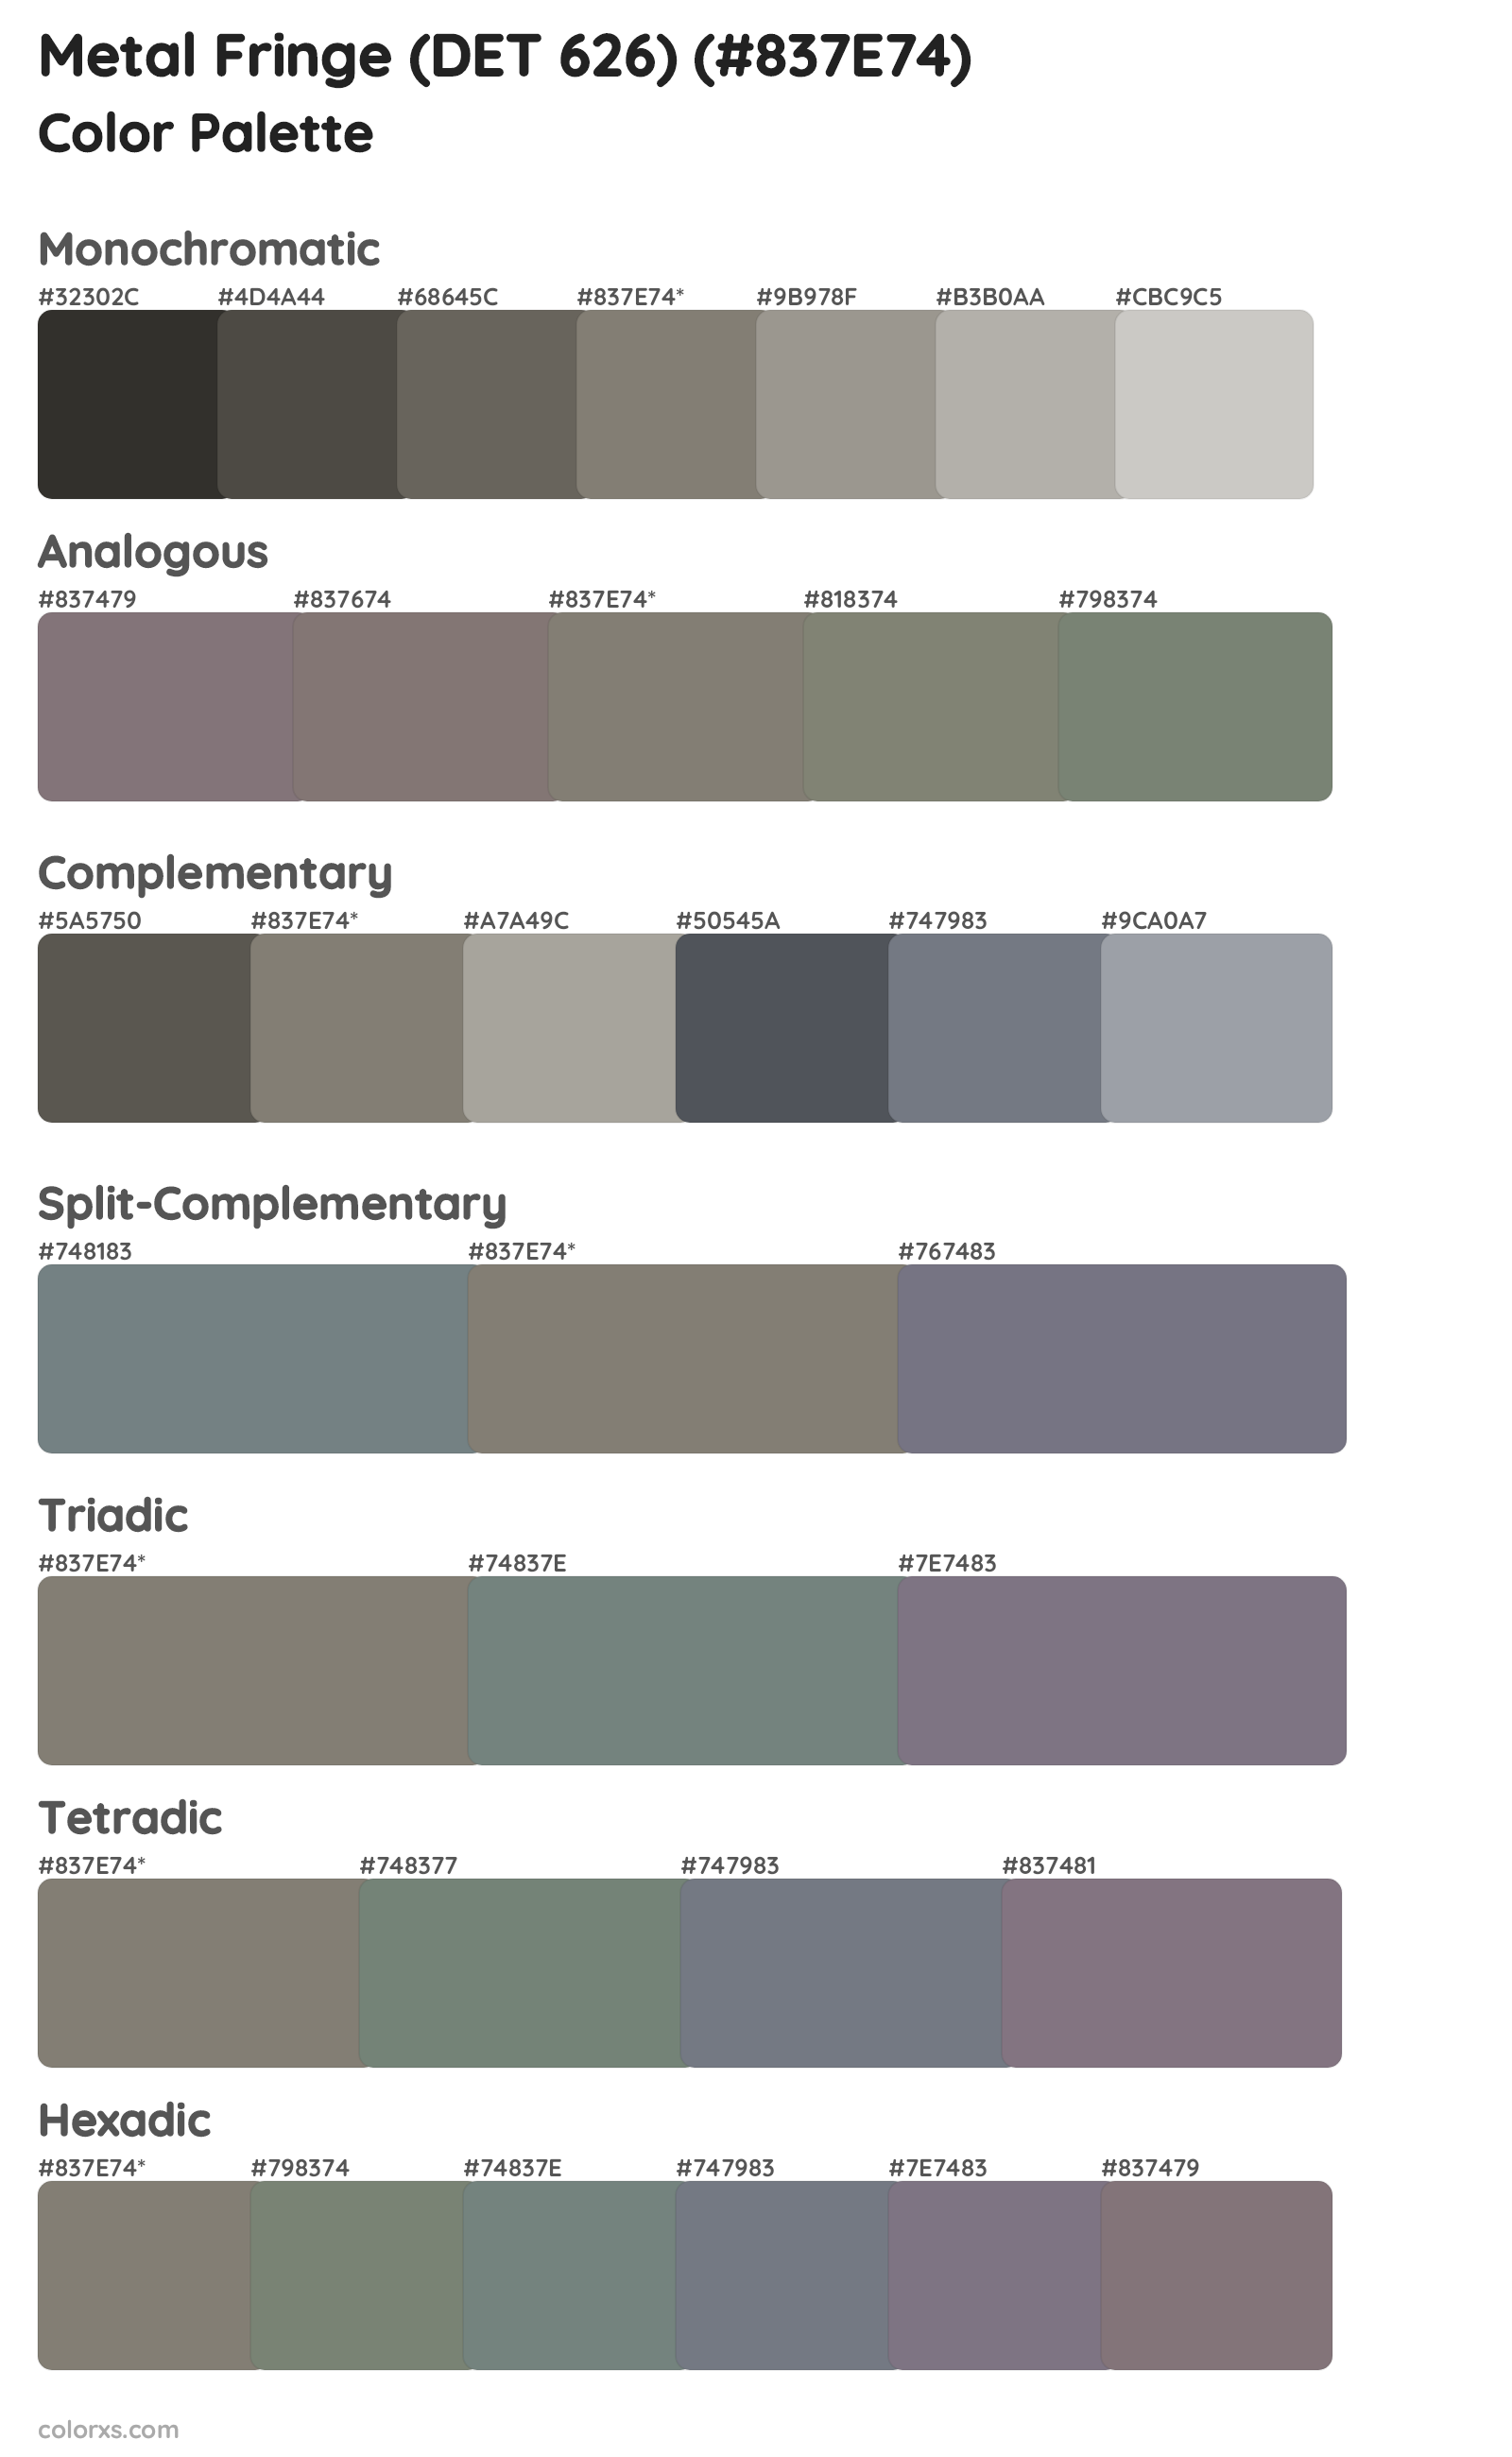 Metal Fringe (DET 626) Color Scheme Palettes